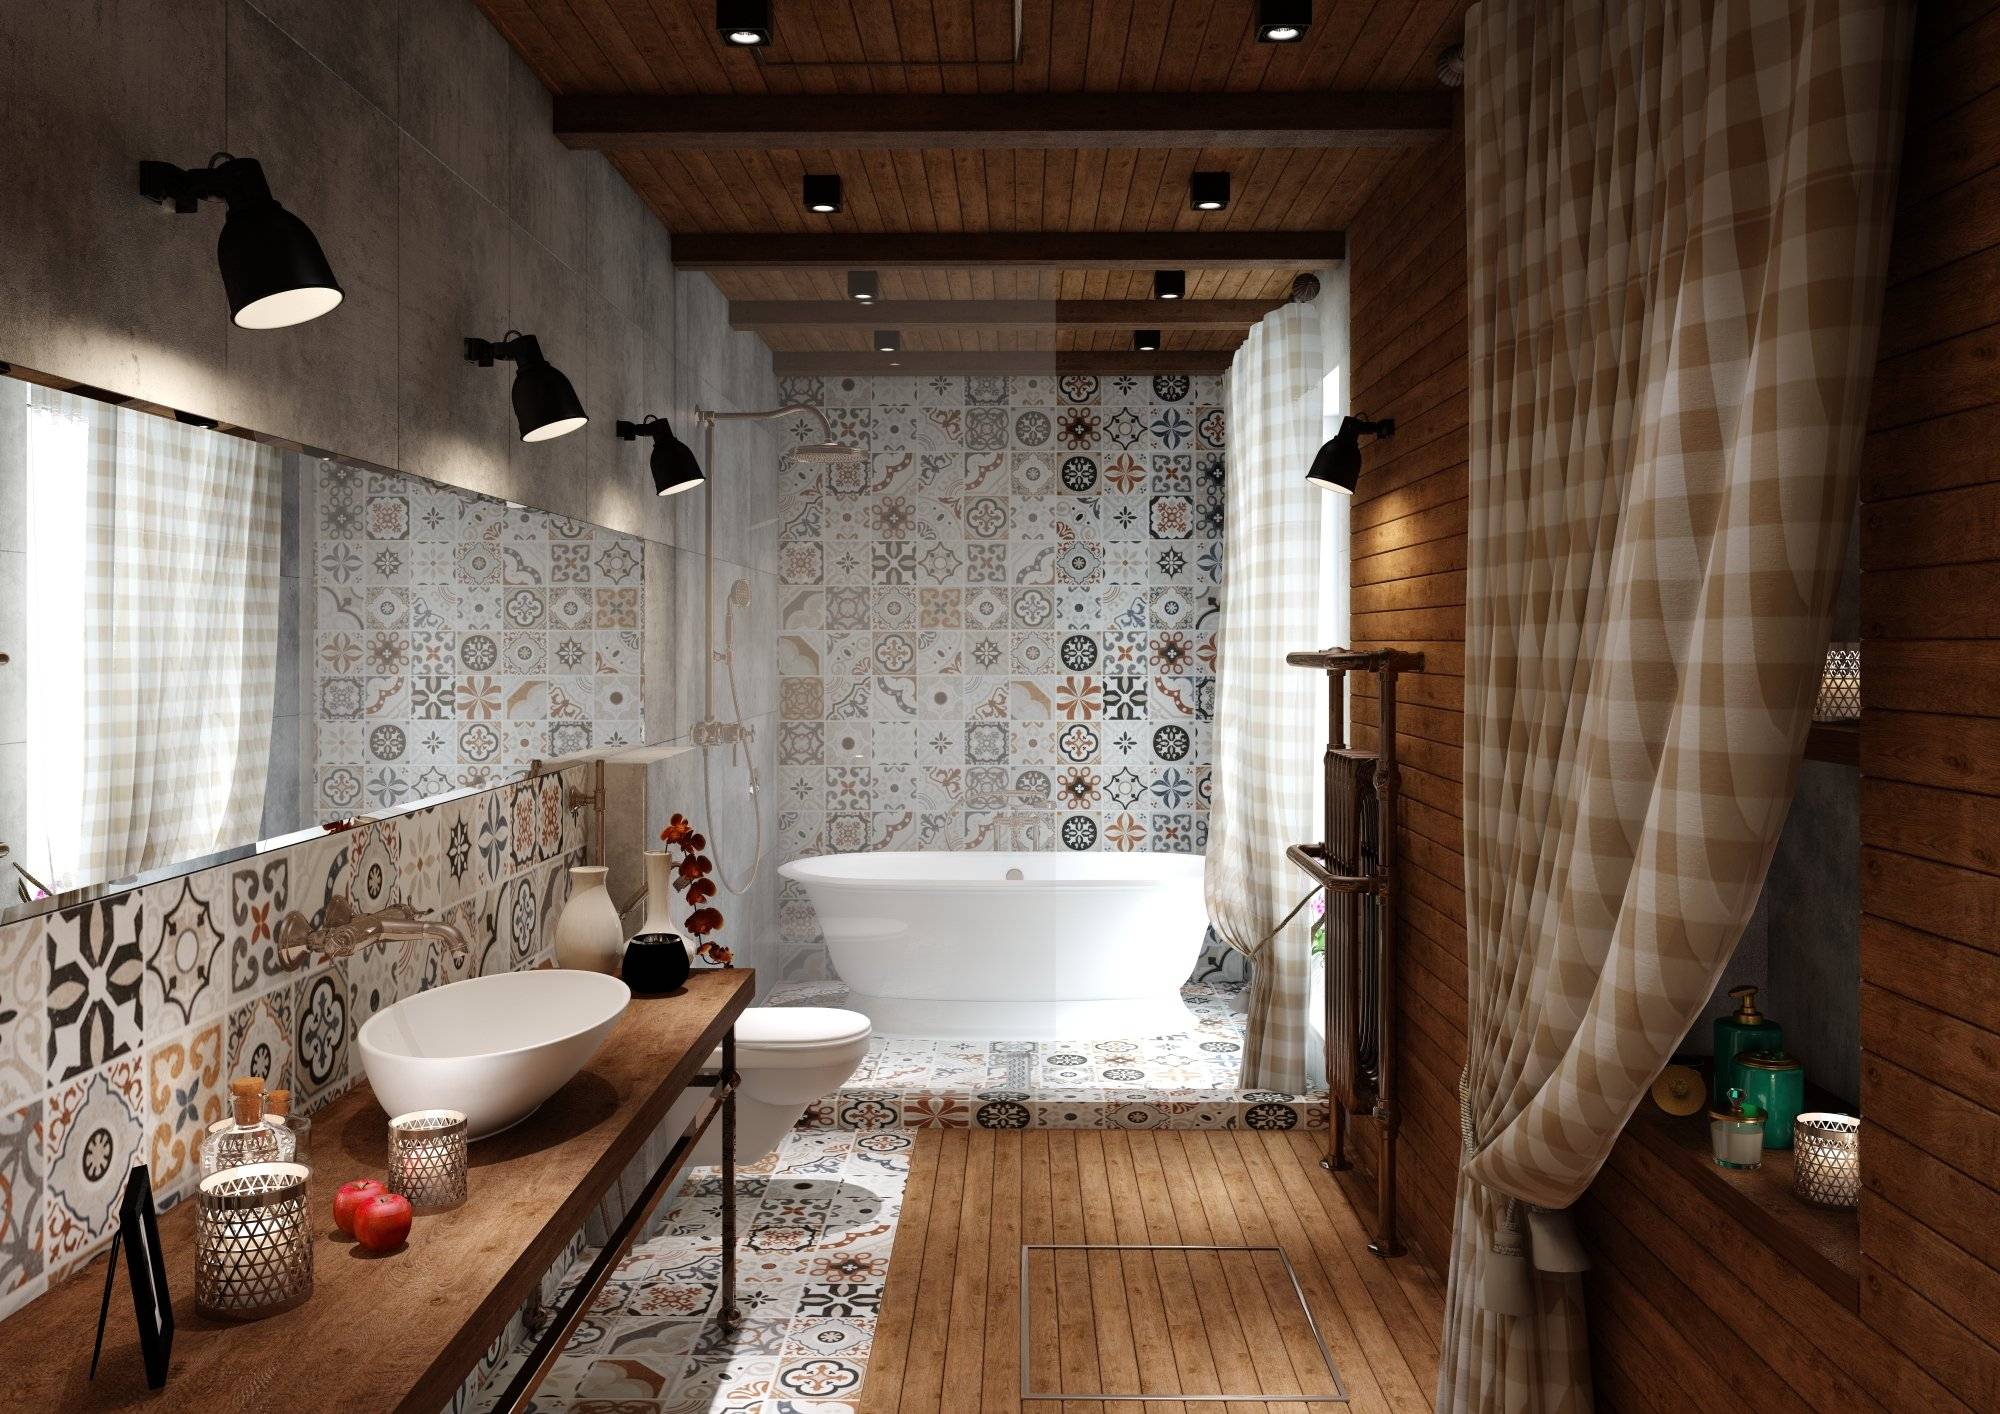 Стиль лофт в интерьере ванной- особенности дизайна и выбора сантехники